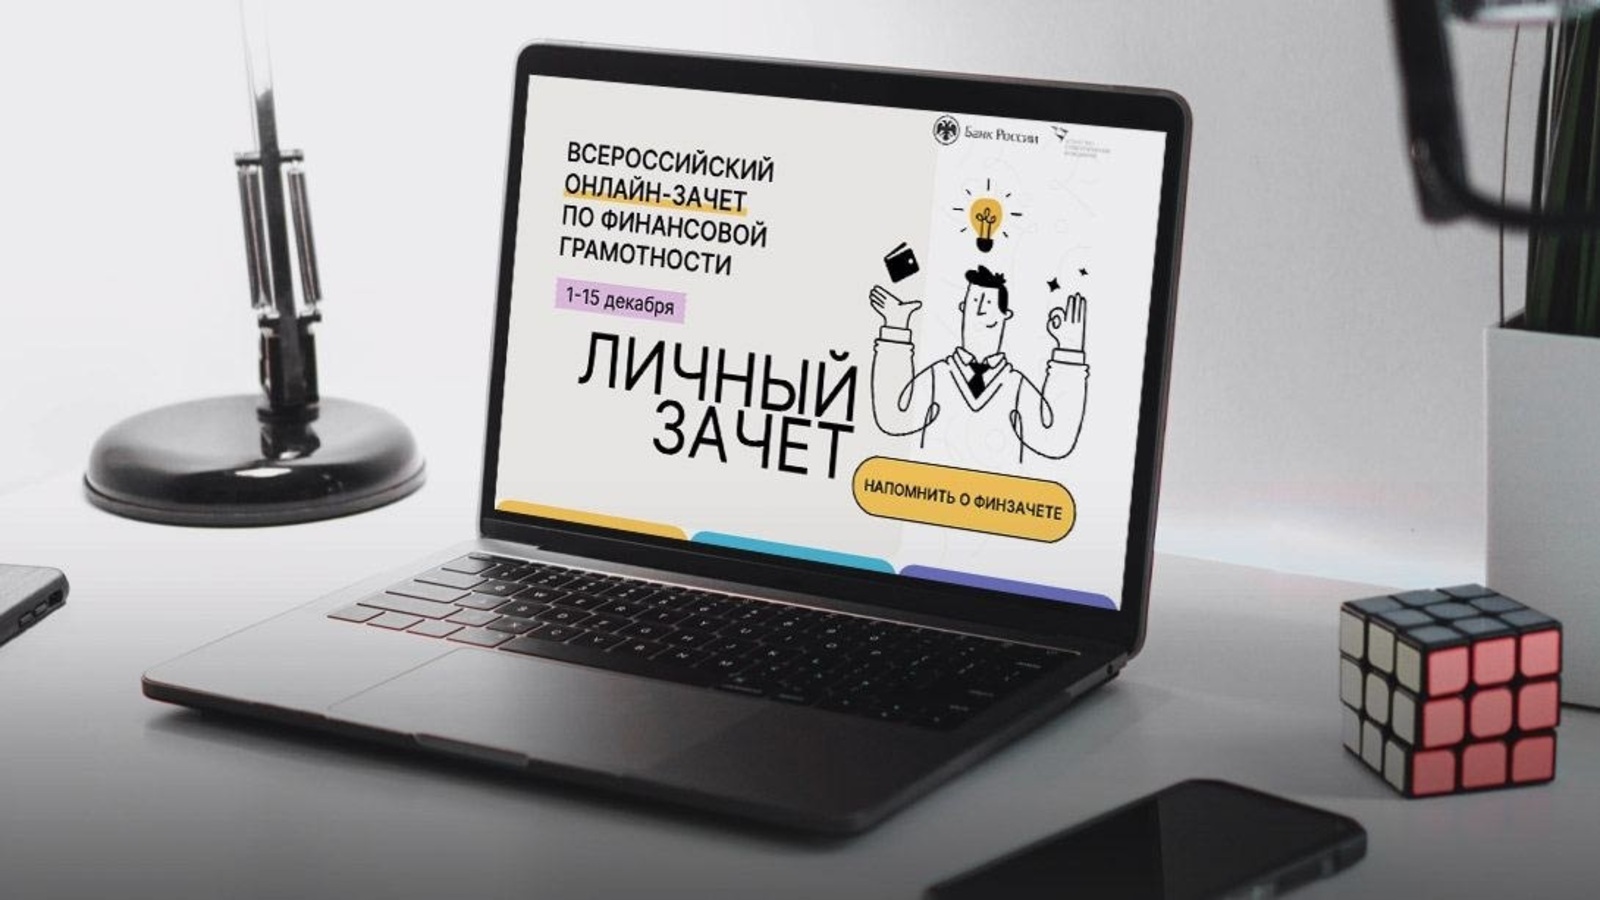 С 1 по 15 декабря пройдет Всероссийский онлайн-зачет по финансовой грамотности.